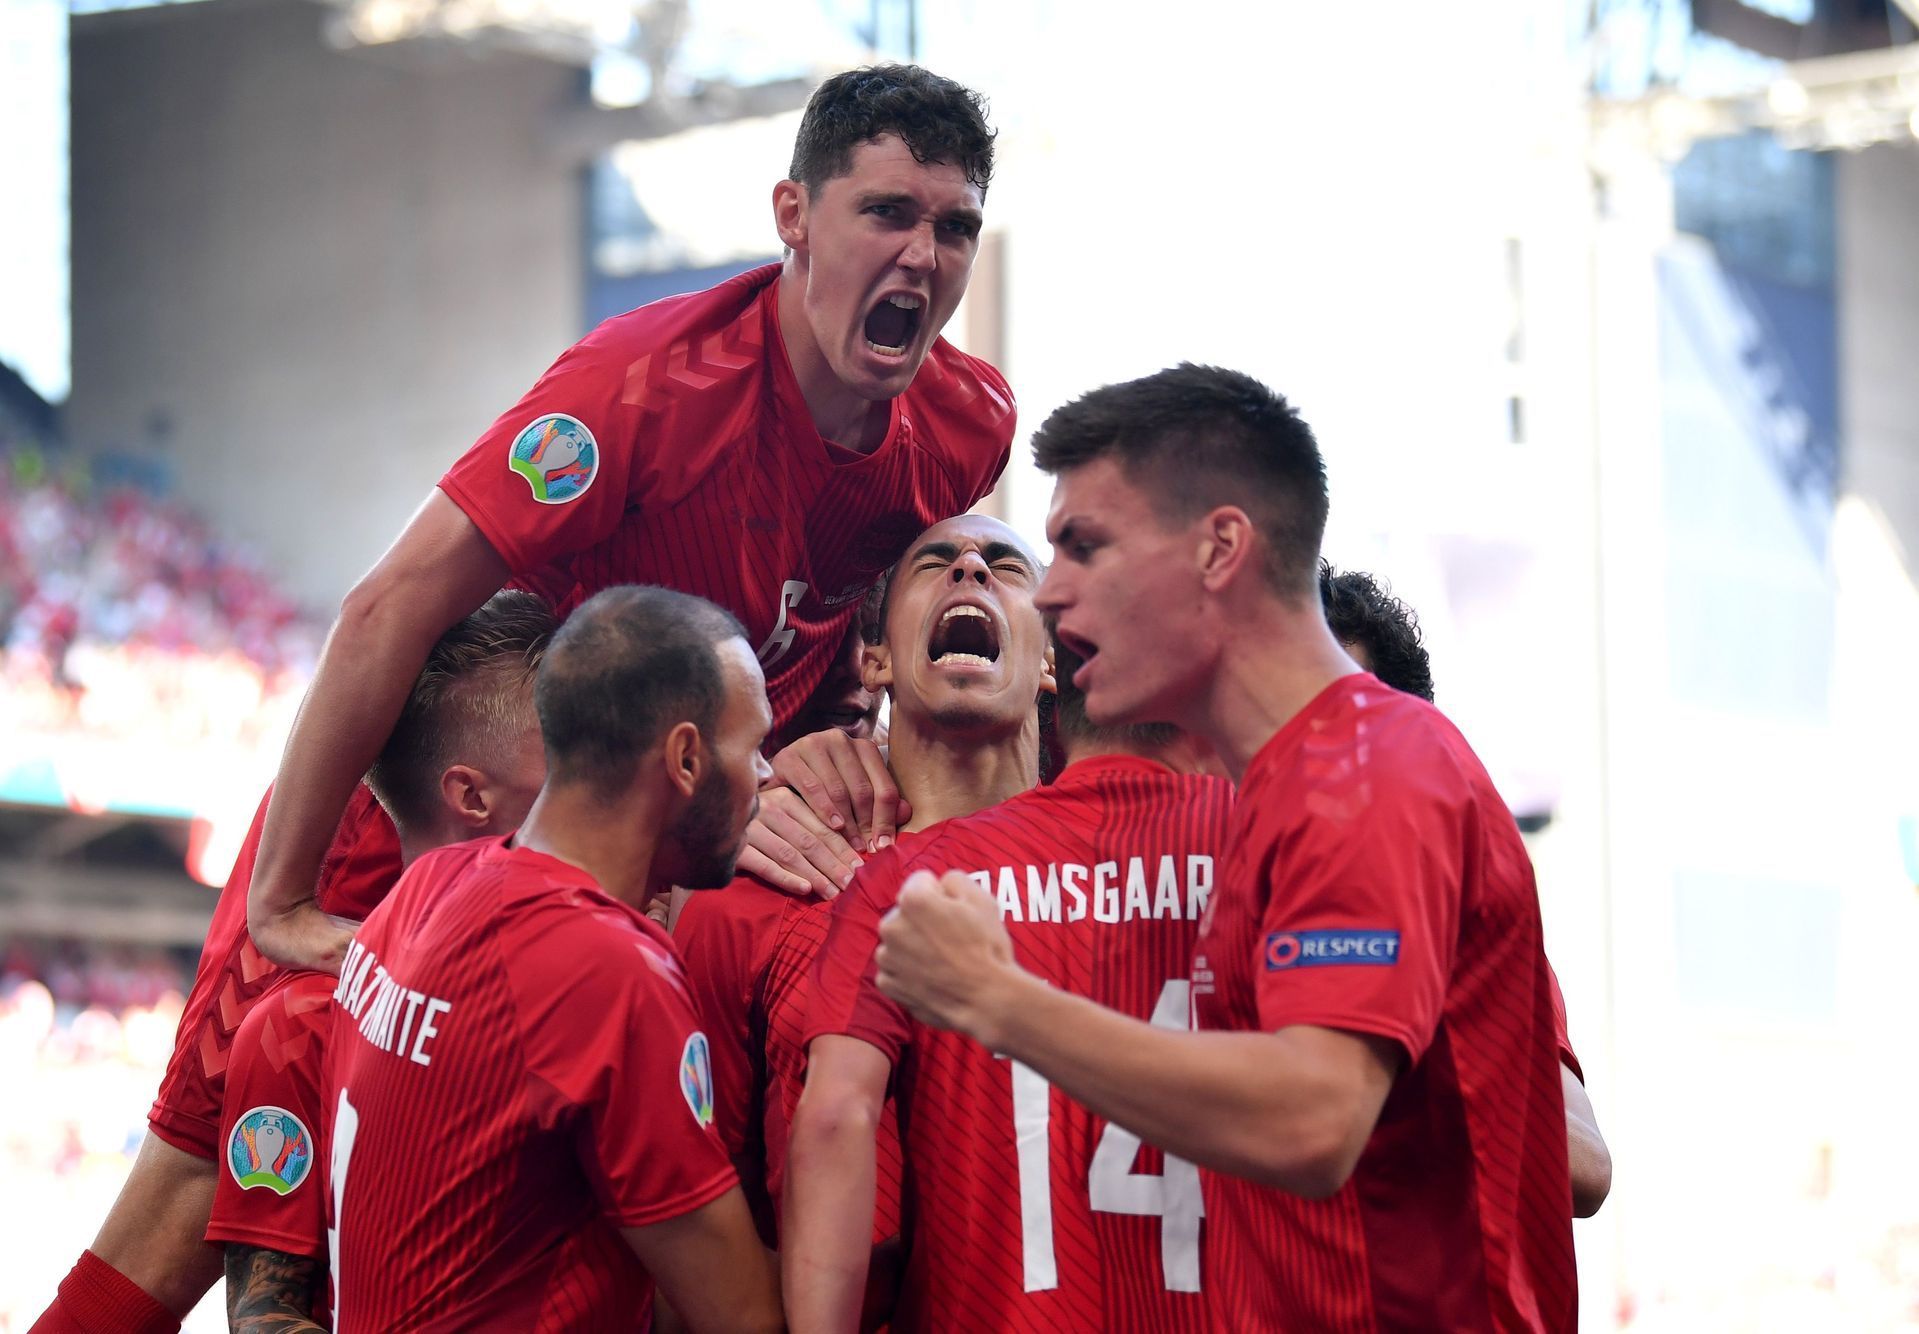 fotbal, ME, Euro 2020, Dánsko - Belgie, Yussuf Poulsen, gól radost